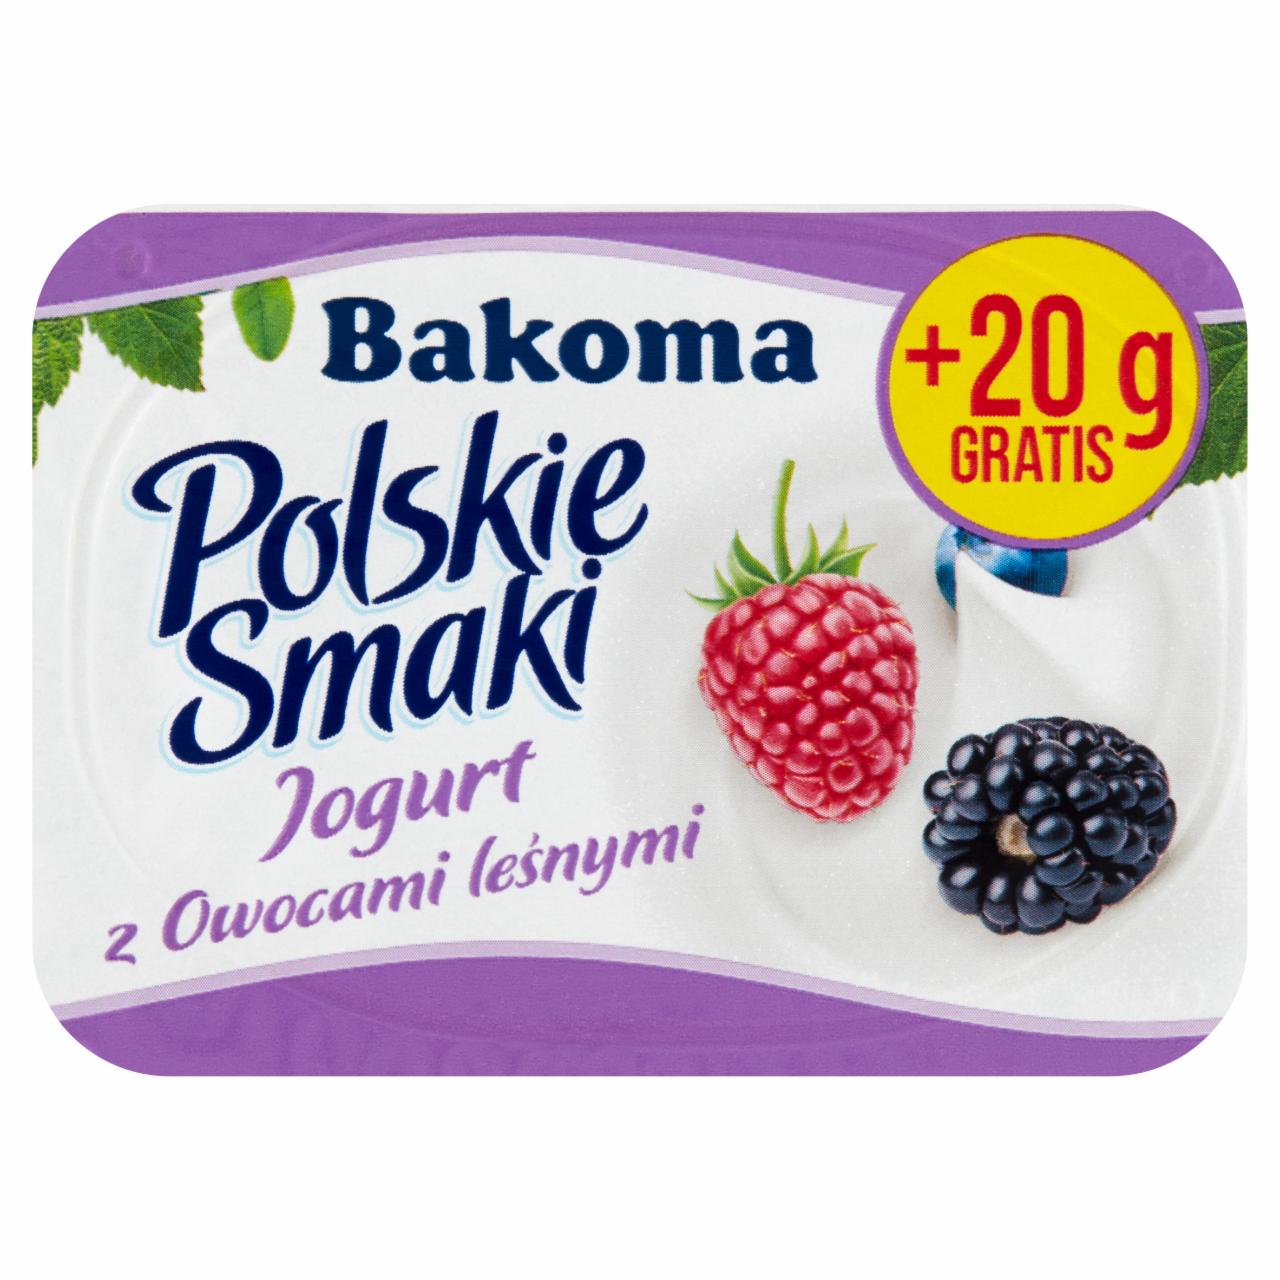 Zdjęcia - Polskie Smaki Jogurt z owocami leśnymi Bakoma